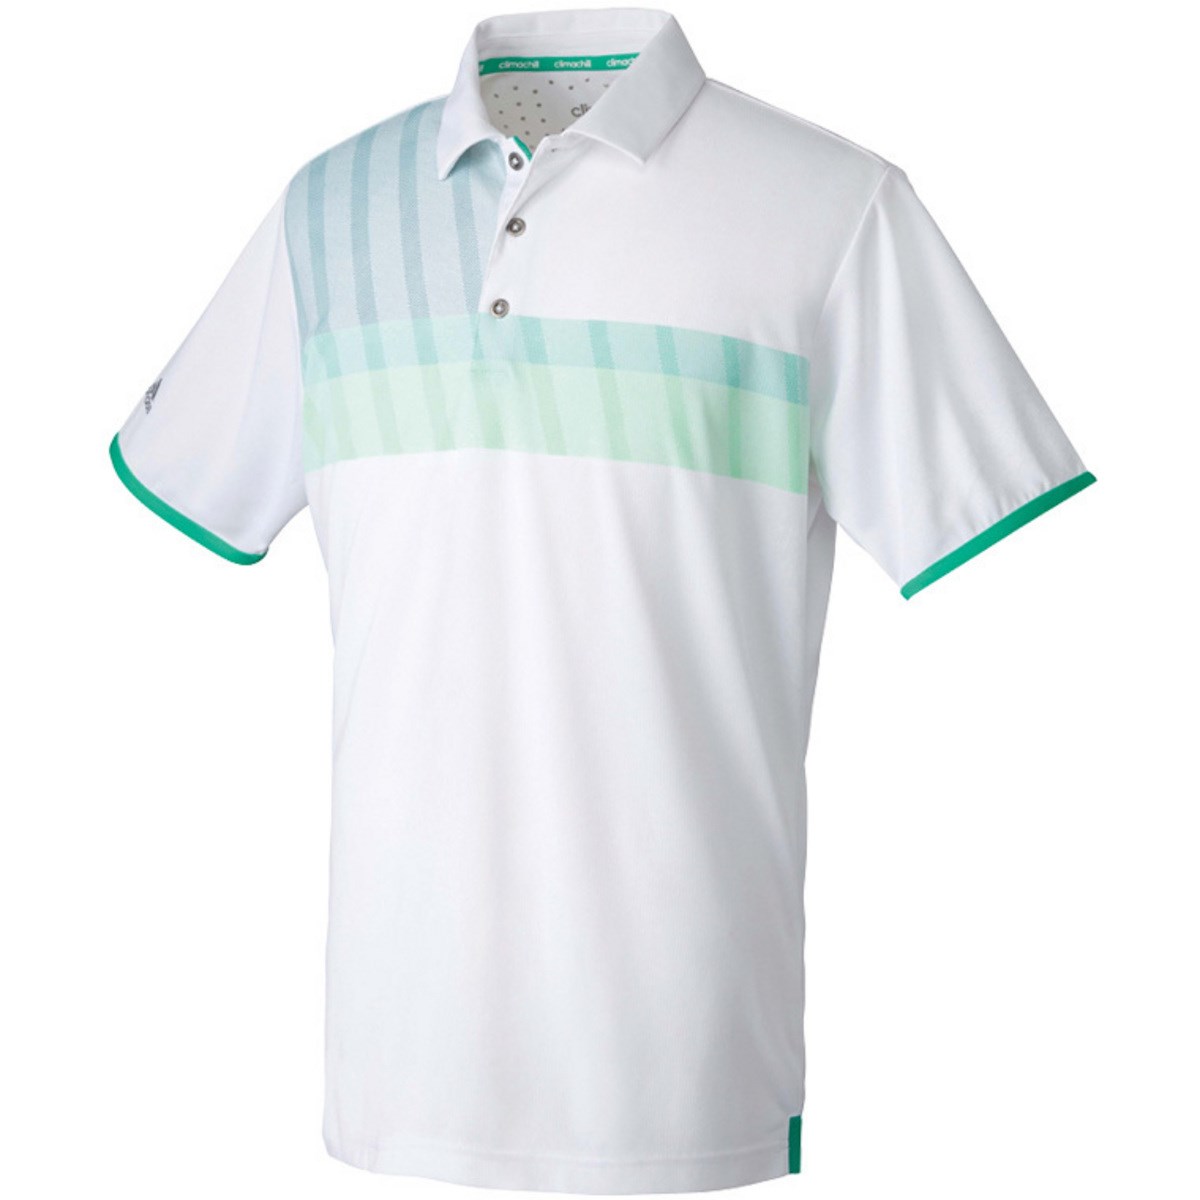 Climachill ホワイトベース 半袖ポロシャツ アディダス Adidas Bm6 通販 Gdoゴルフショップ